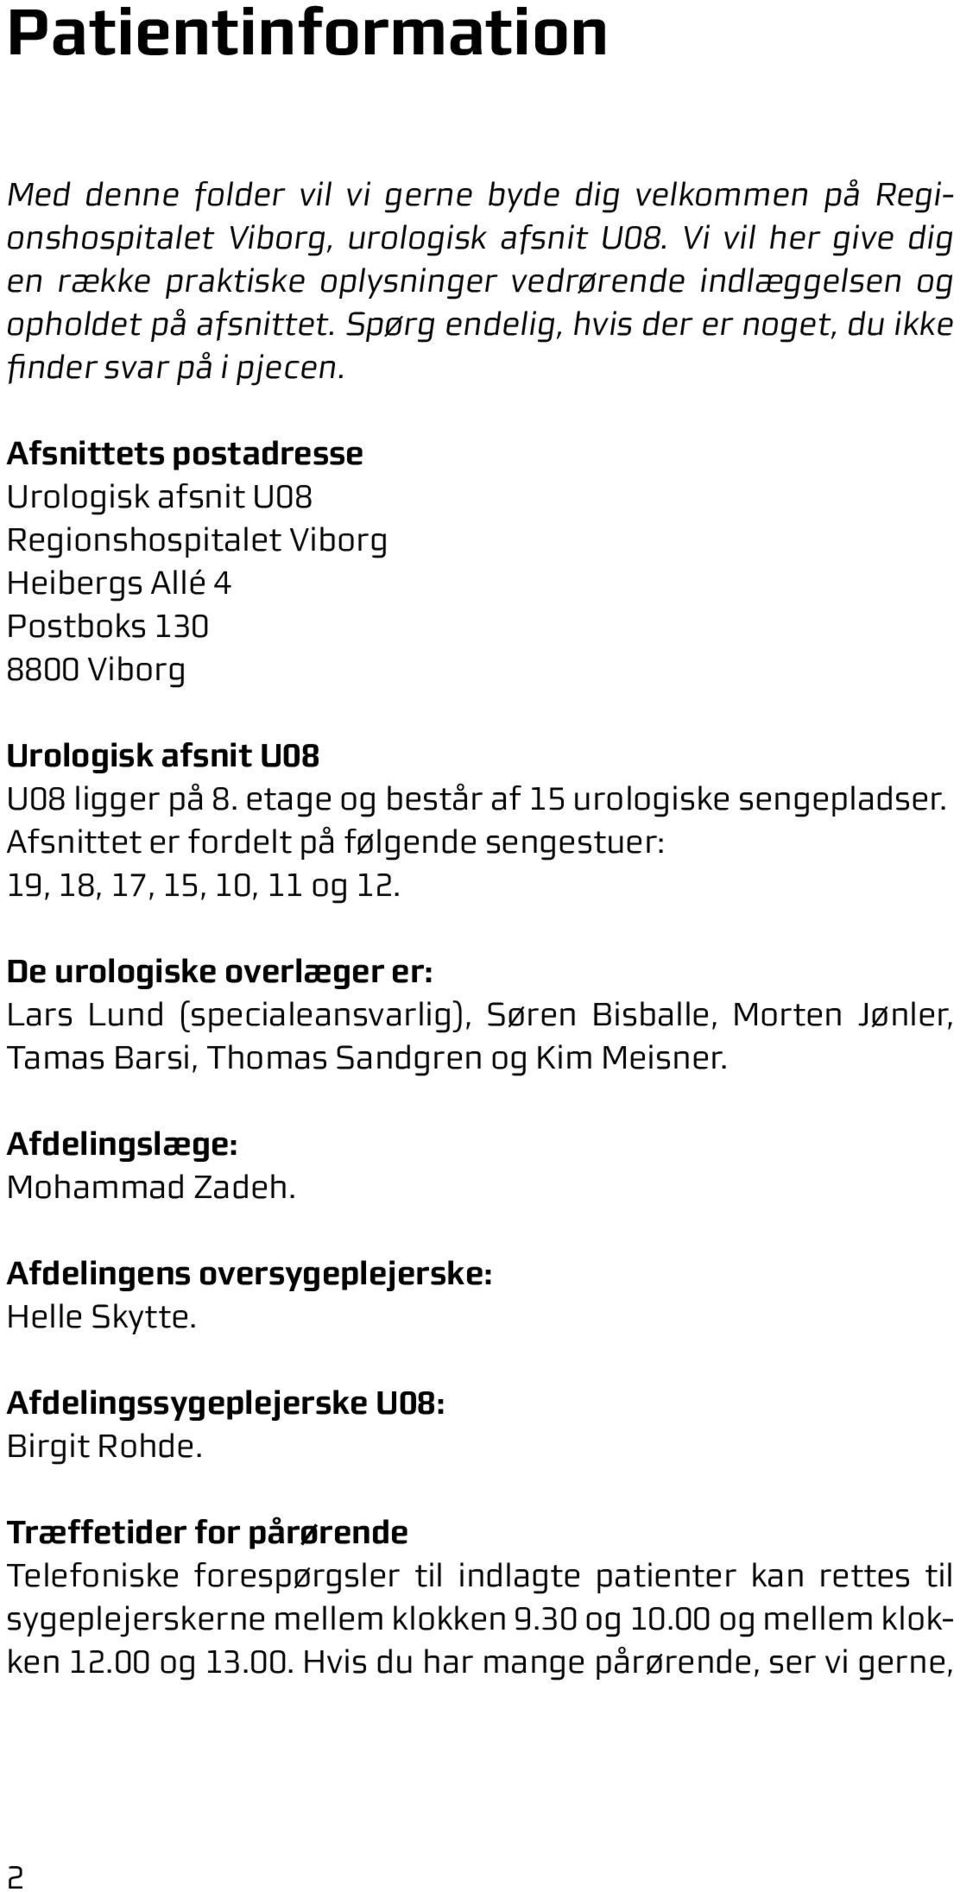 Afsnittets postadresse Urologisk afsnit U08 Regionshospitalet Viborg Heibergs Allé 4 ostboks 130 8800 Viborg Urologisk afsnit U08 U08 ligger på 8. etage og består af 15 urologiske sengepladser.